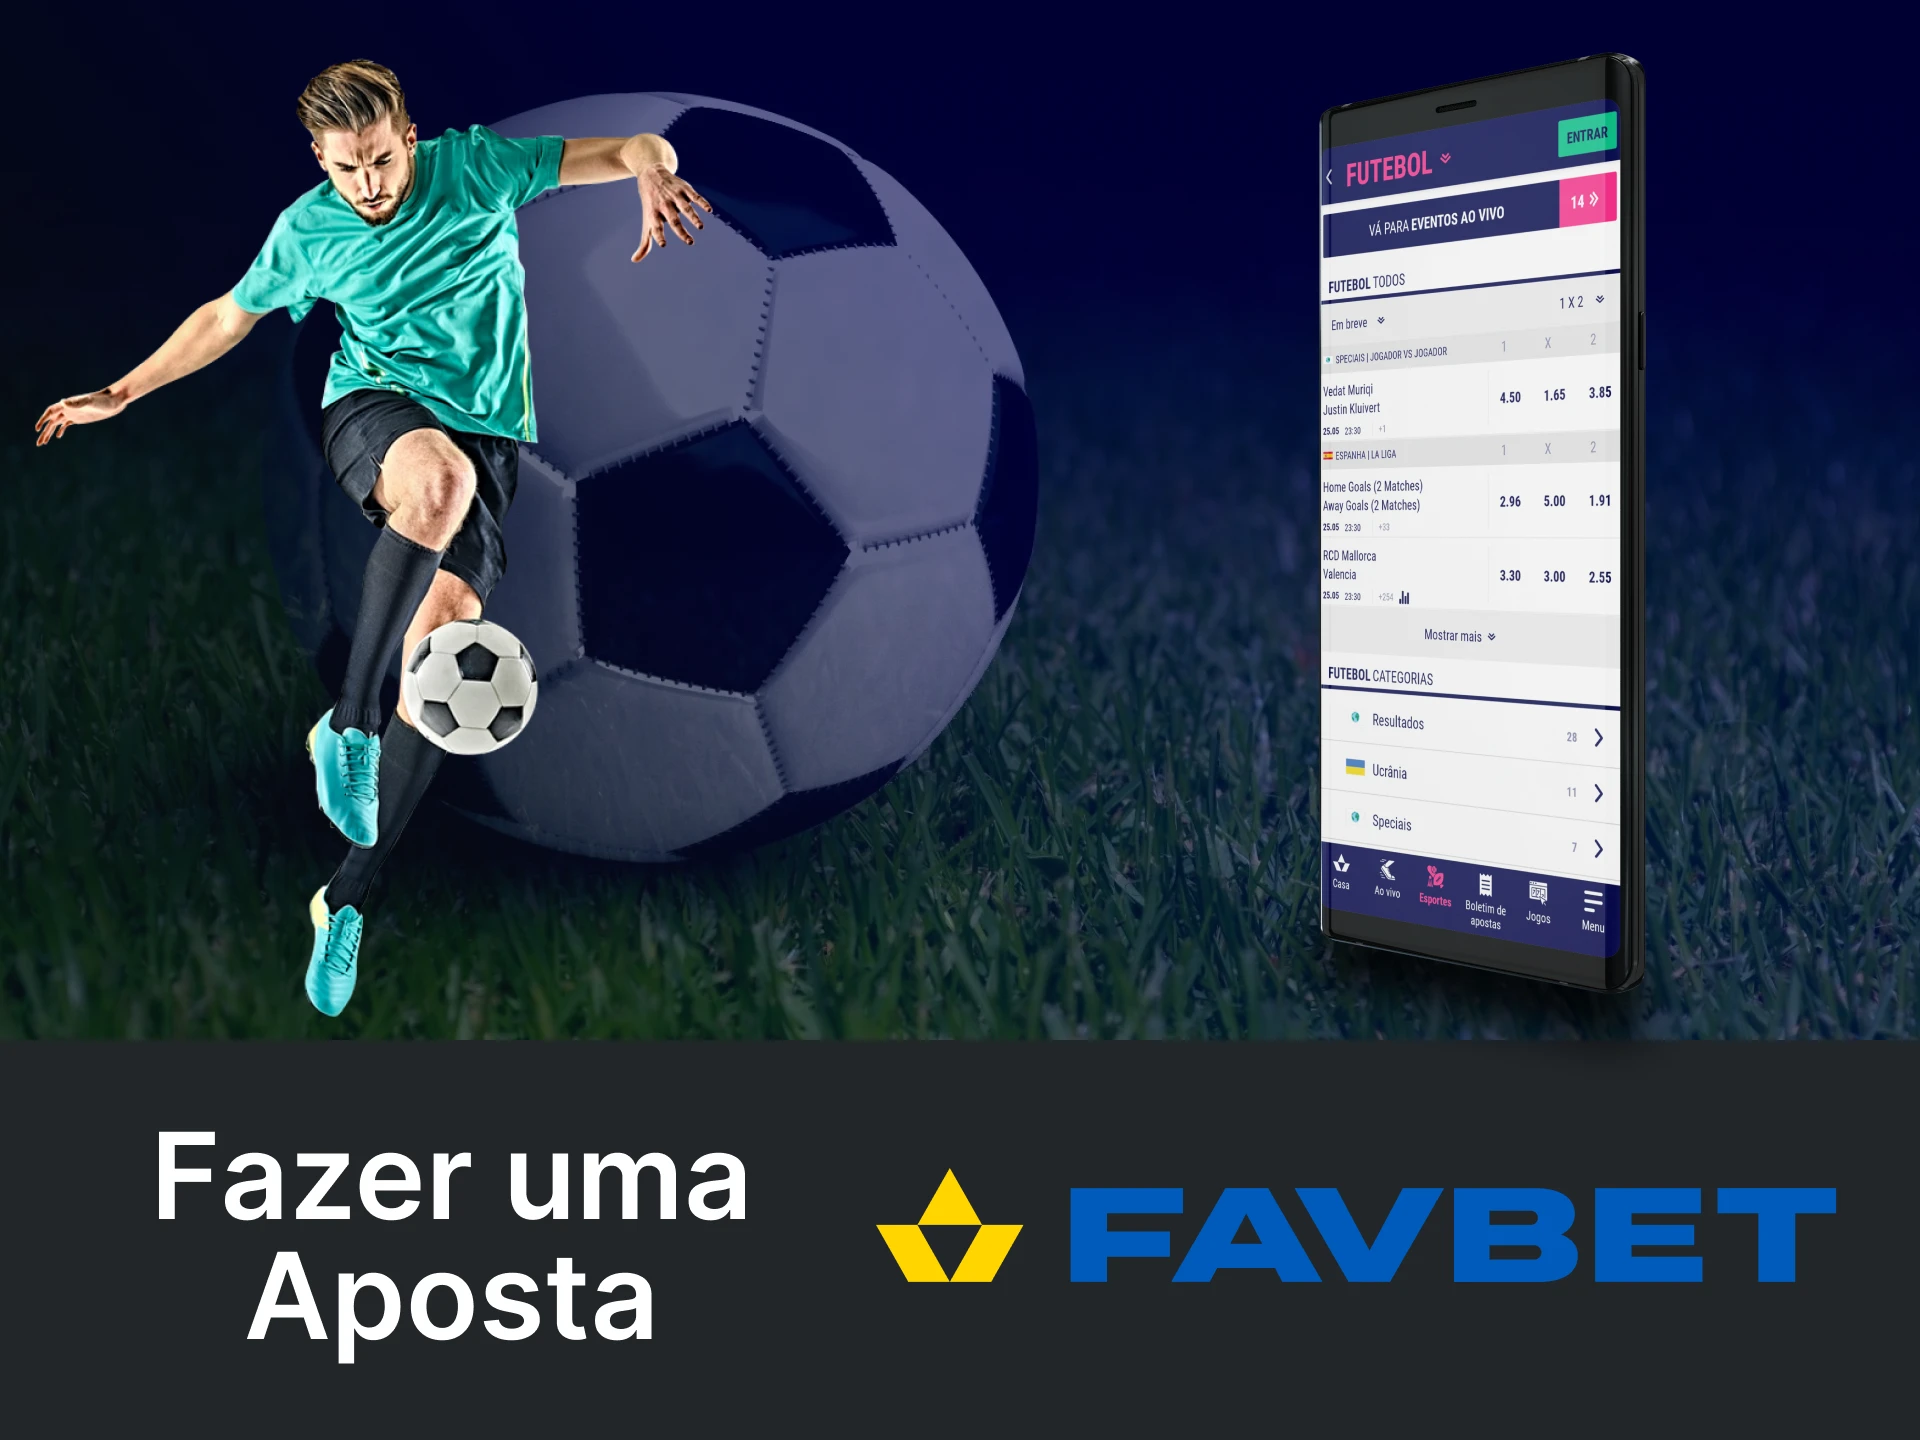 Faça sua primeira aposta de futebol pelo aplicativo Favbet.